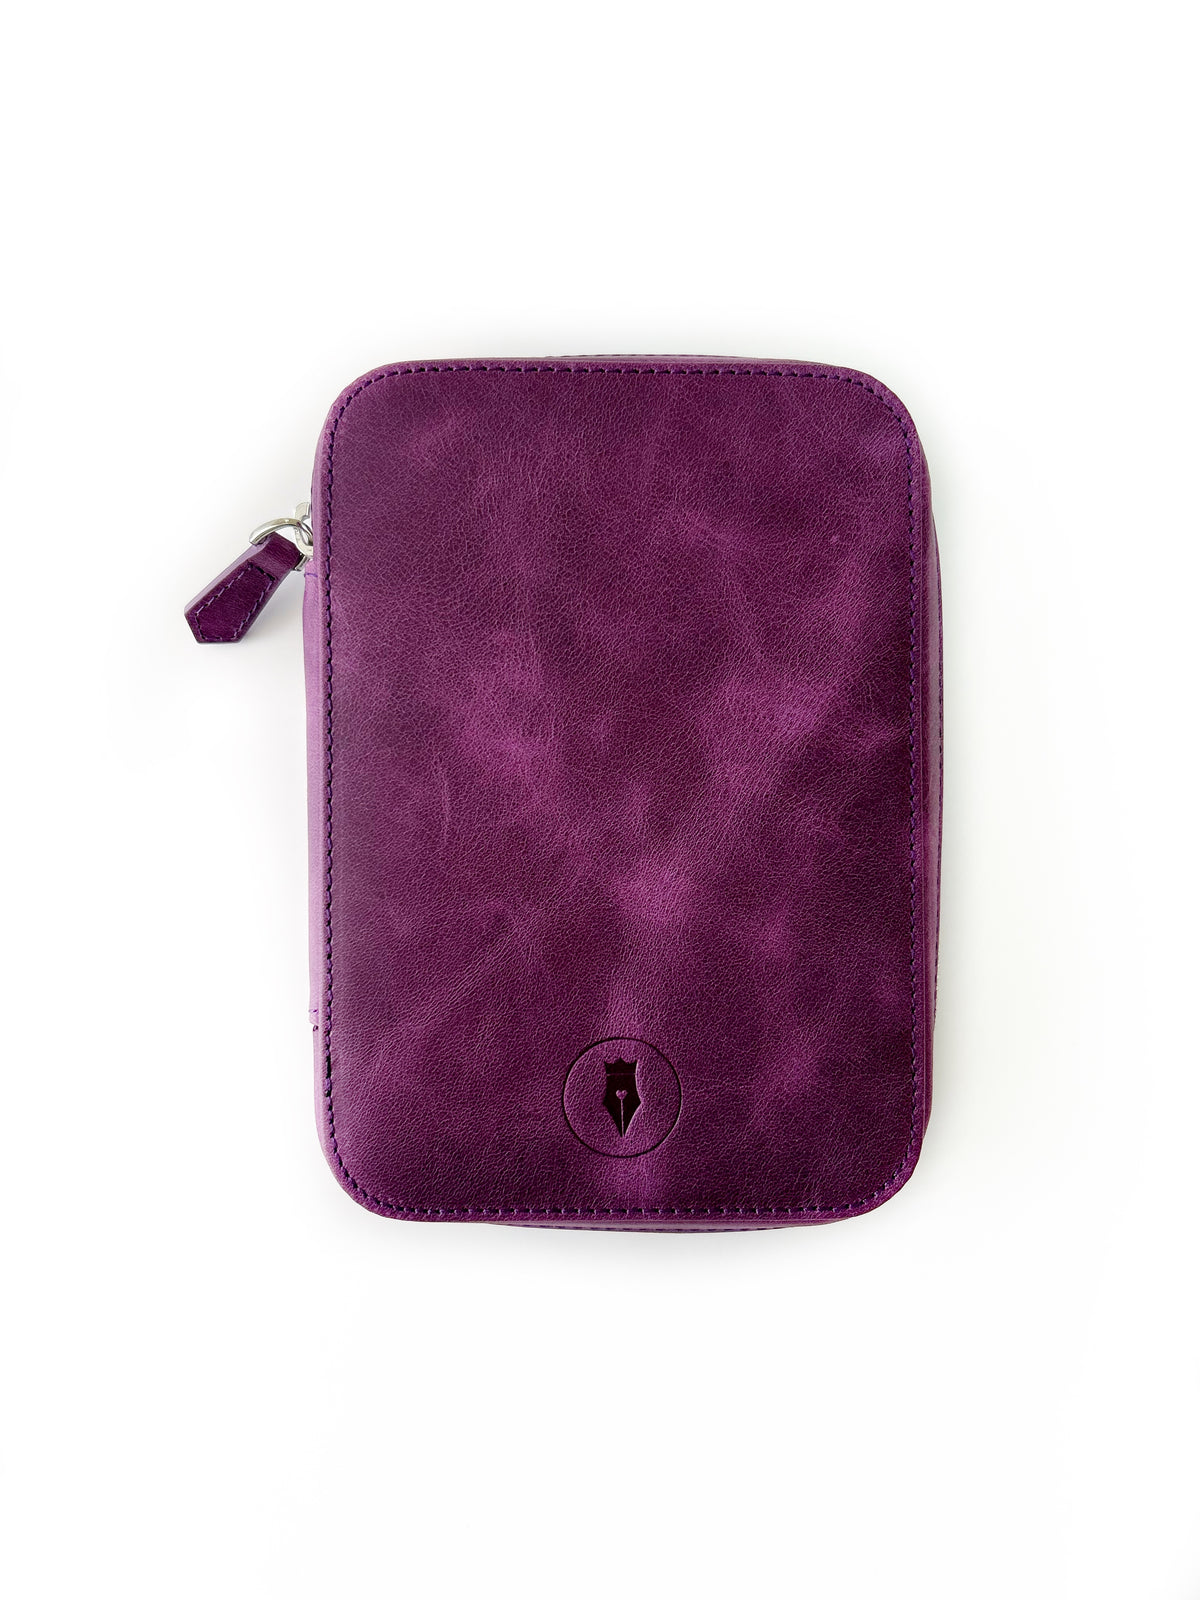 Light Dark Violet 4 Slot Leather Pen Case